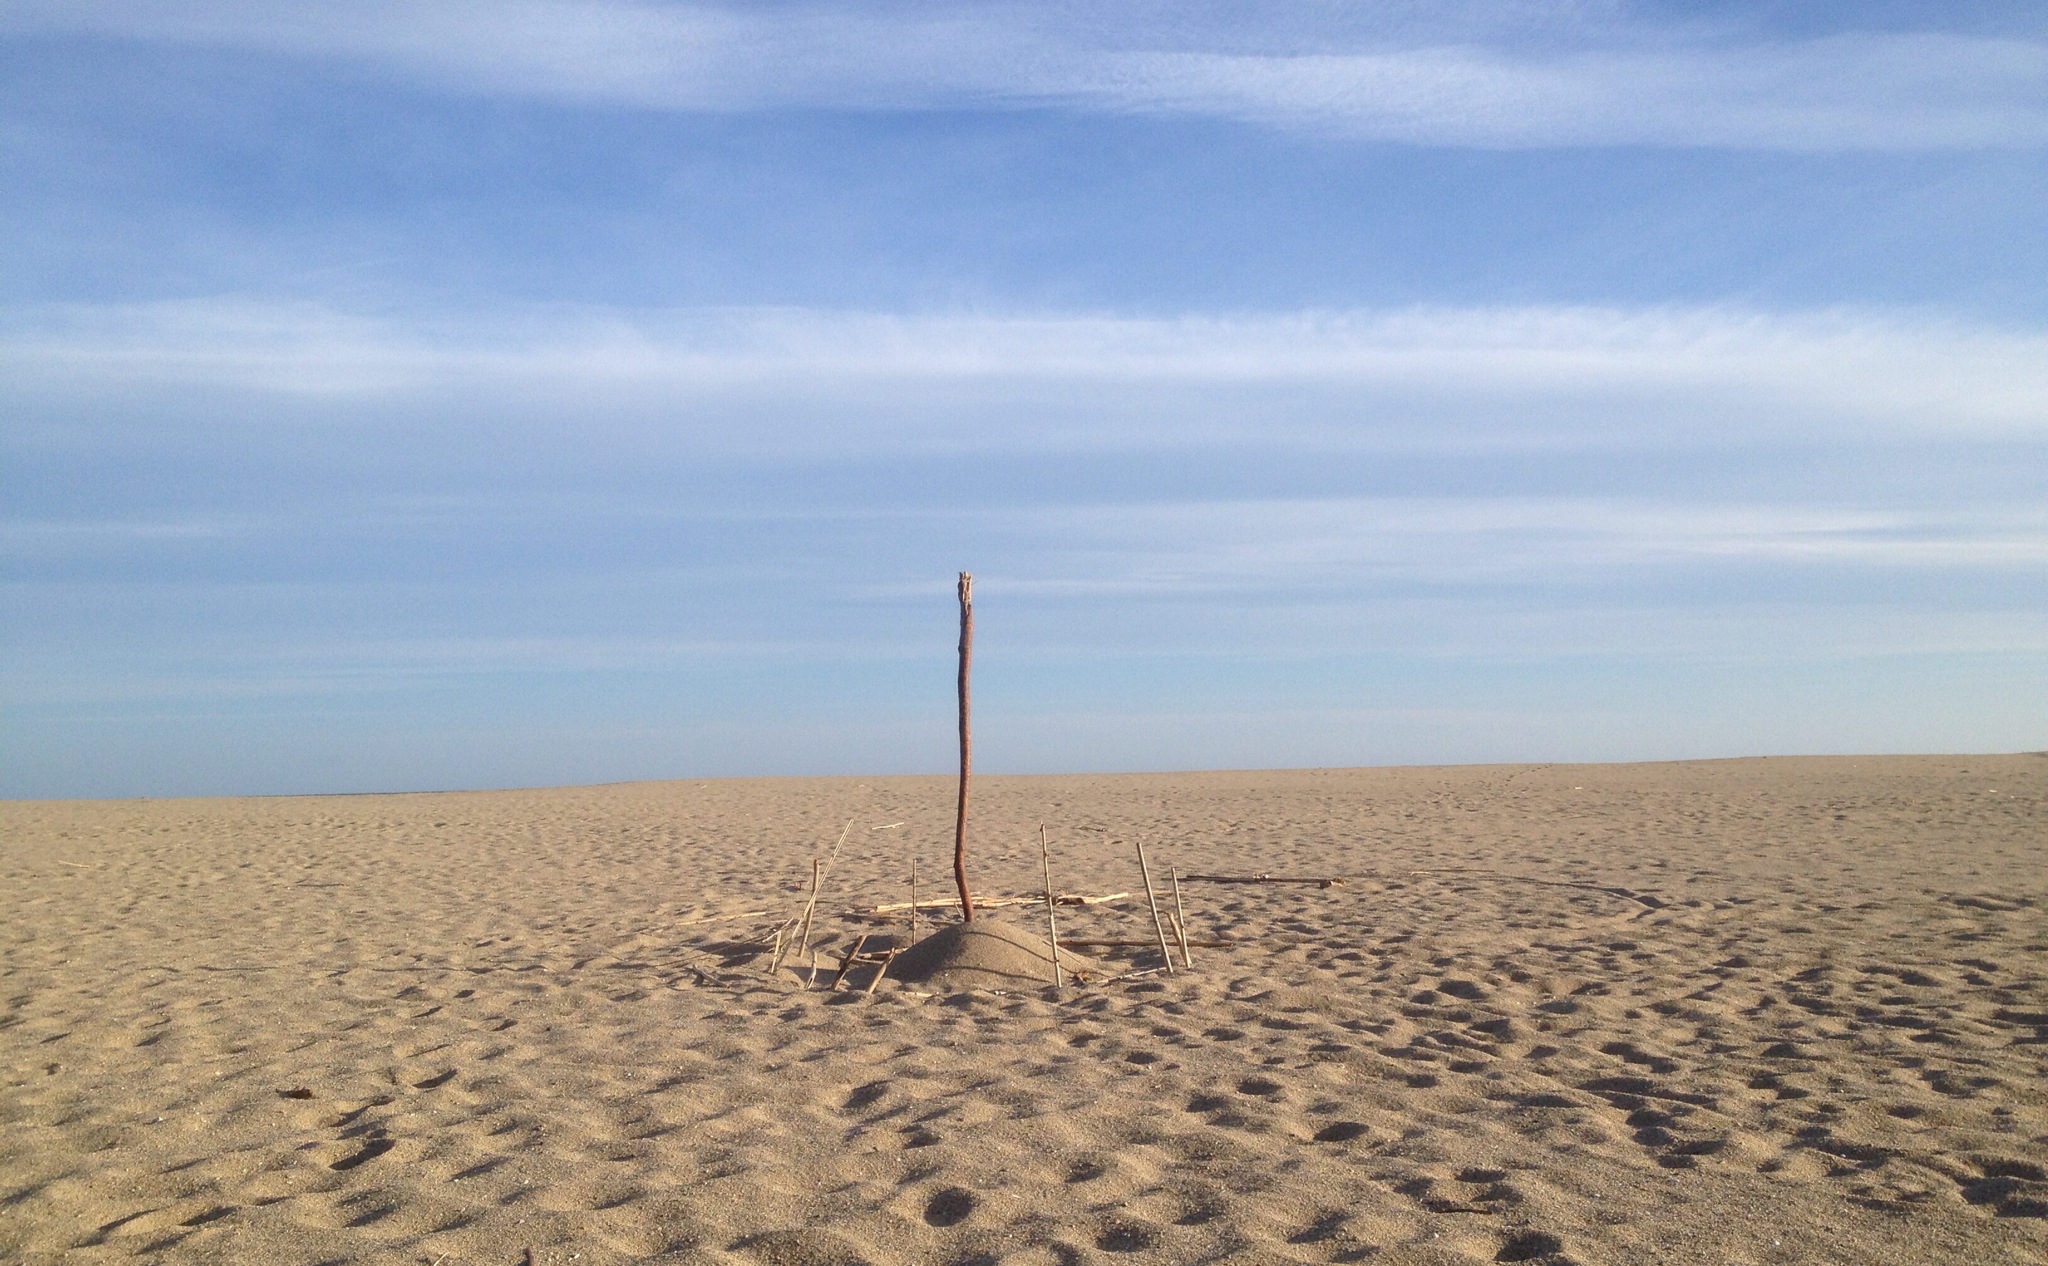 Pfosten auf Sandstrand vor Meer.